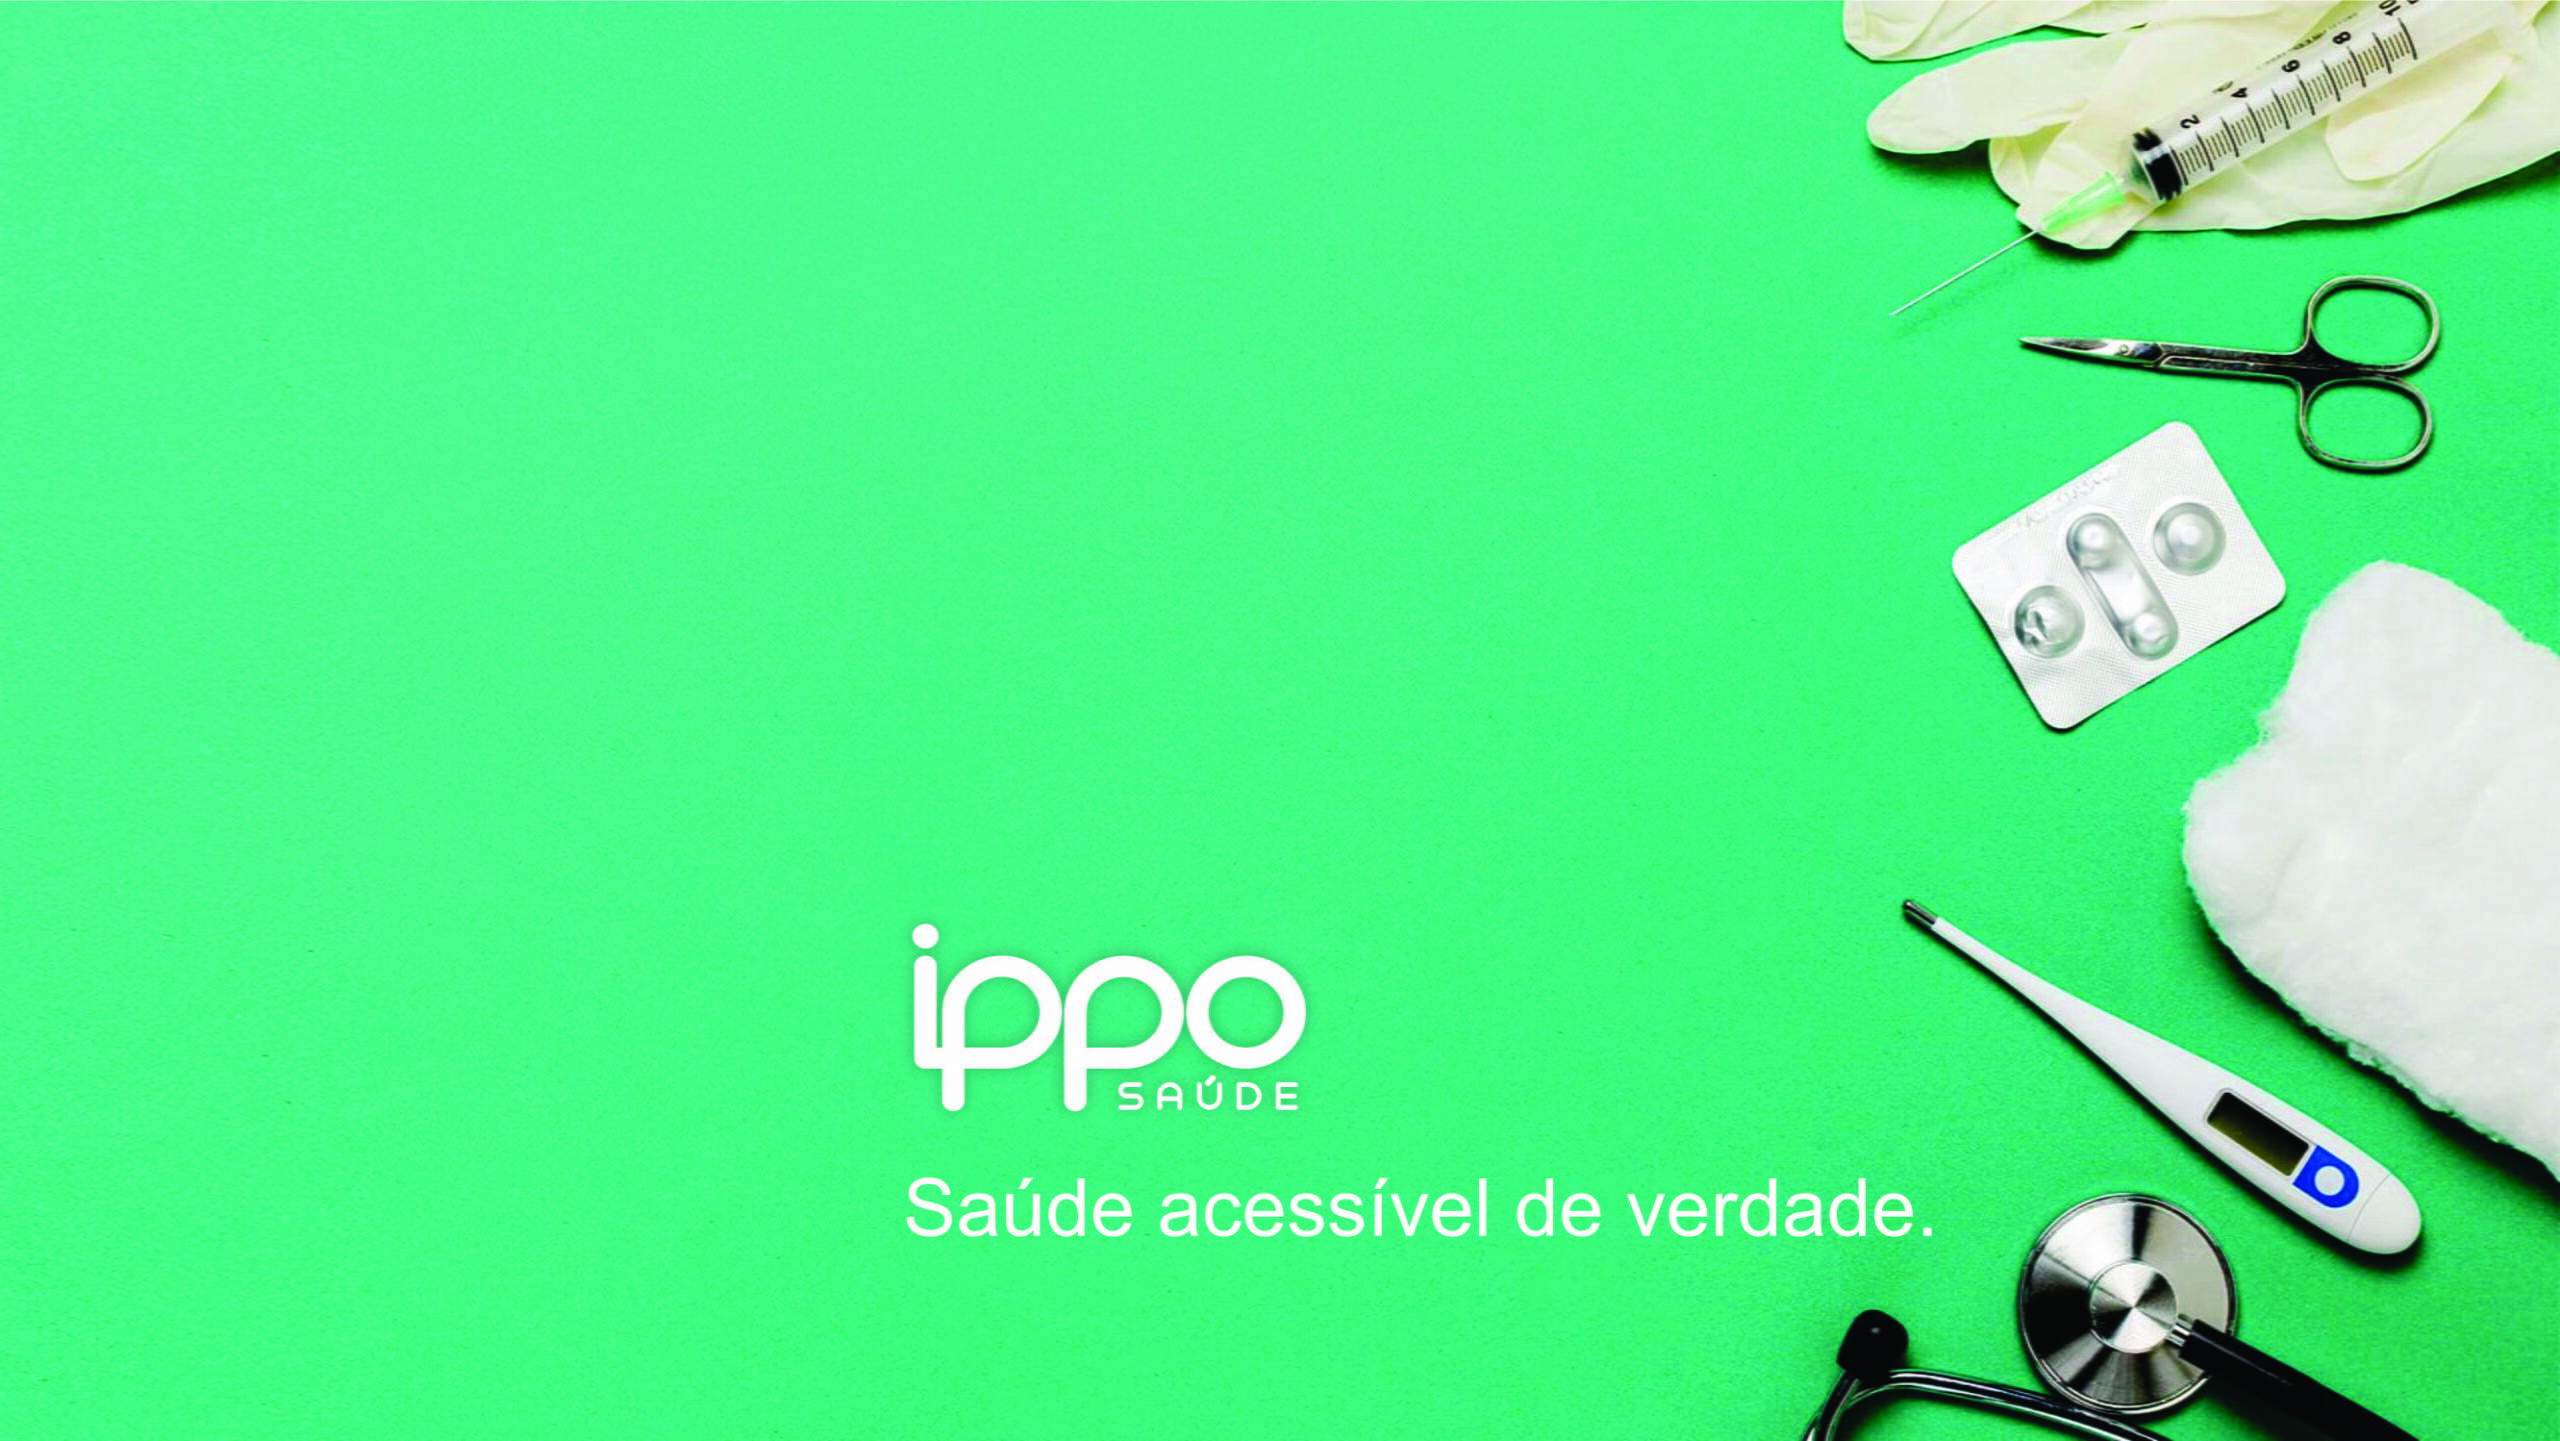 Ippo Saúde / Logo divulgação